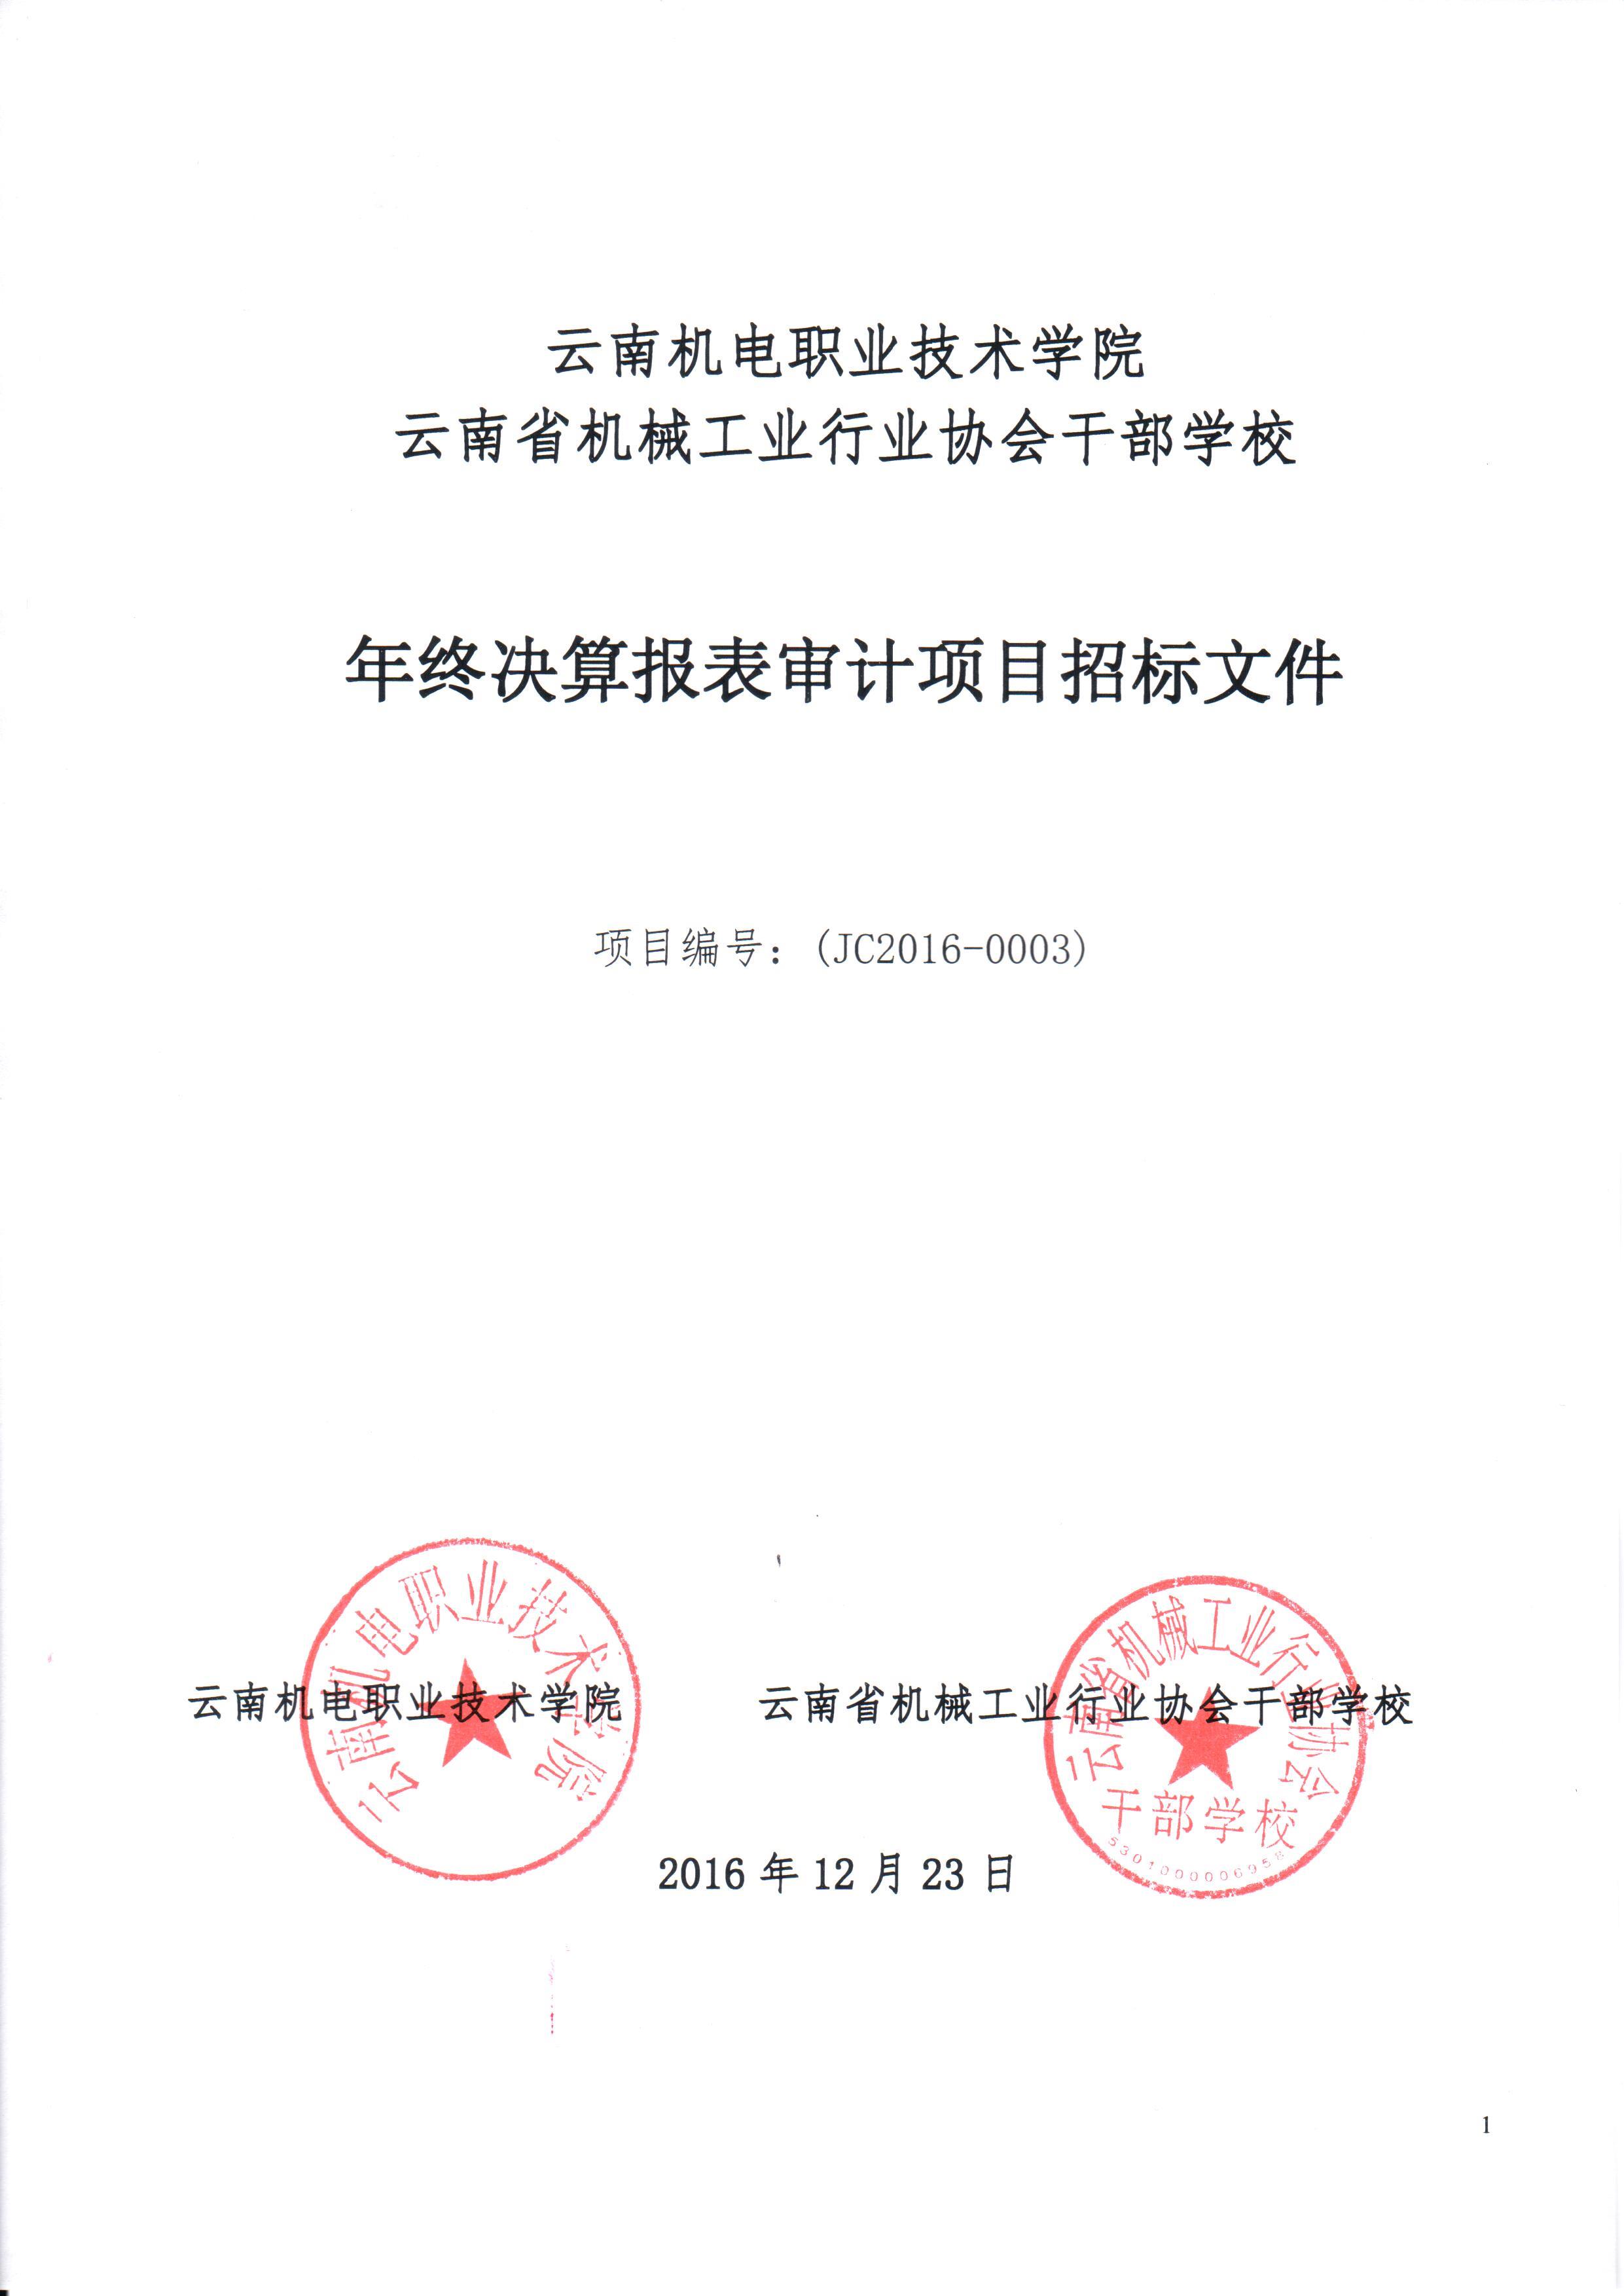 云南机电职业技术学院云南省机械工业行业协会